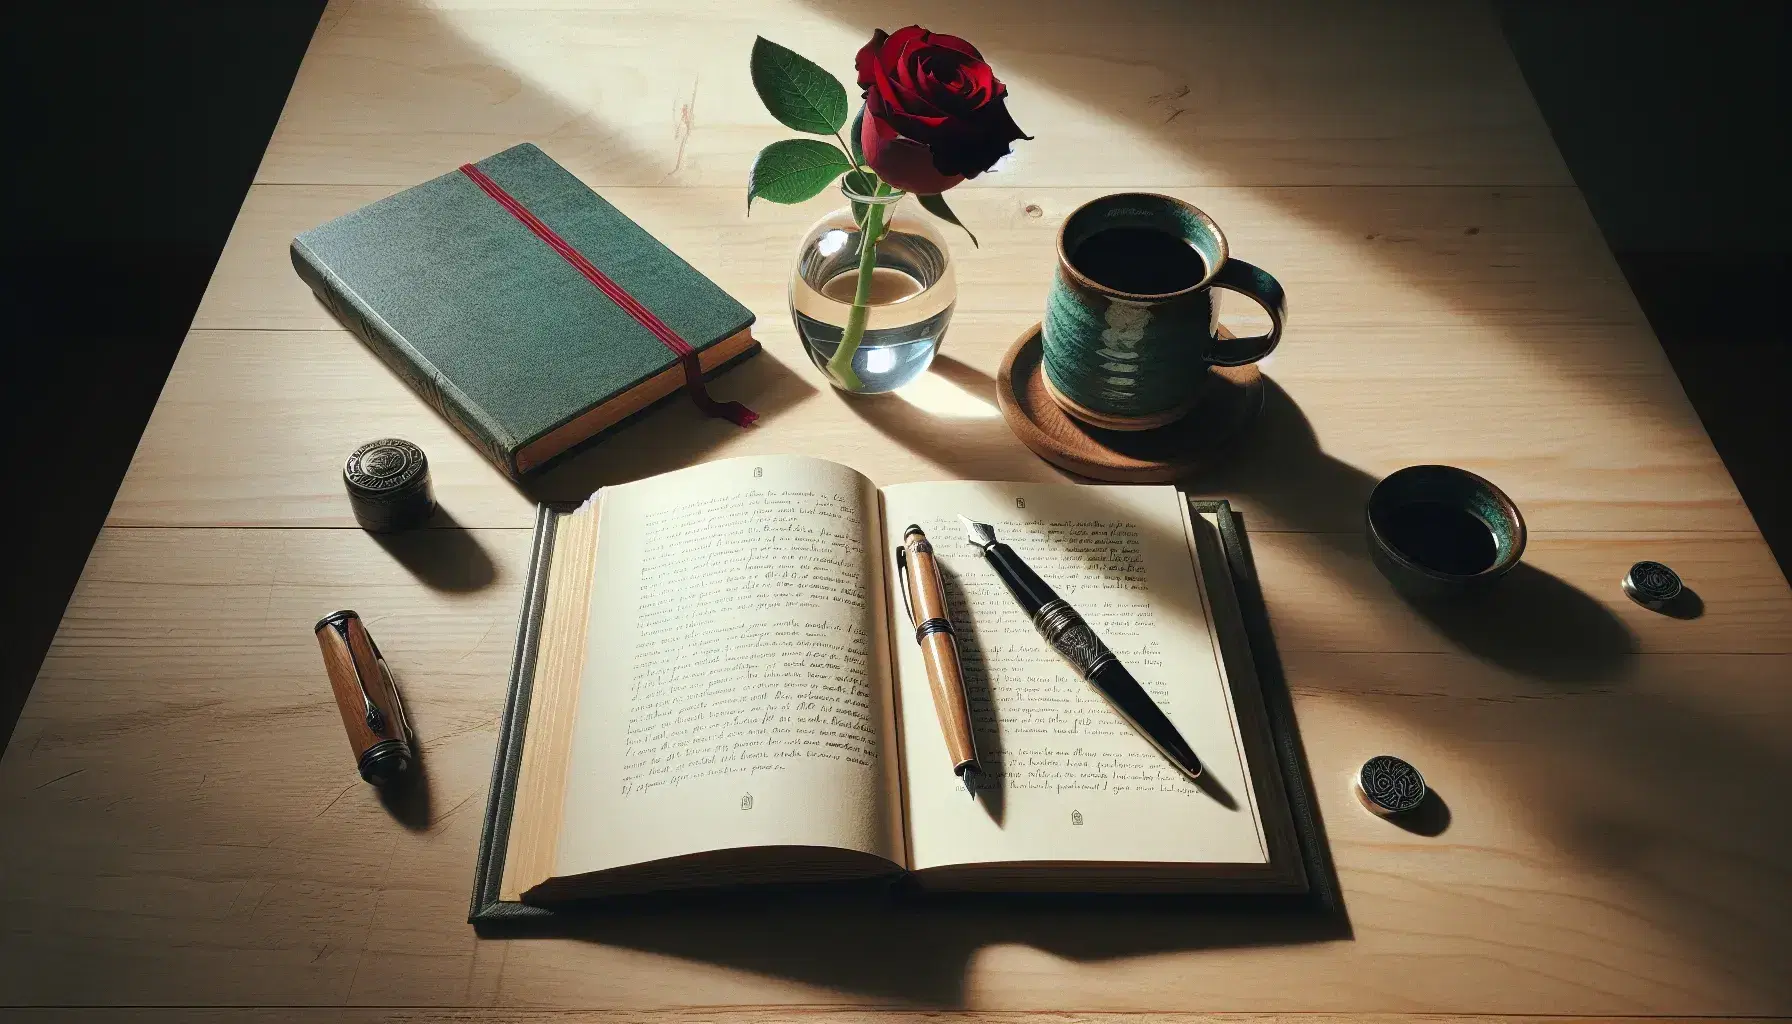 Mesa de madera clara con libro abierto, pluma estilográfica sobre cuaderno verde, taza de café azul turquesa y rosa roja en jarrón de vidrio bajo luz natural.